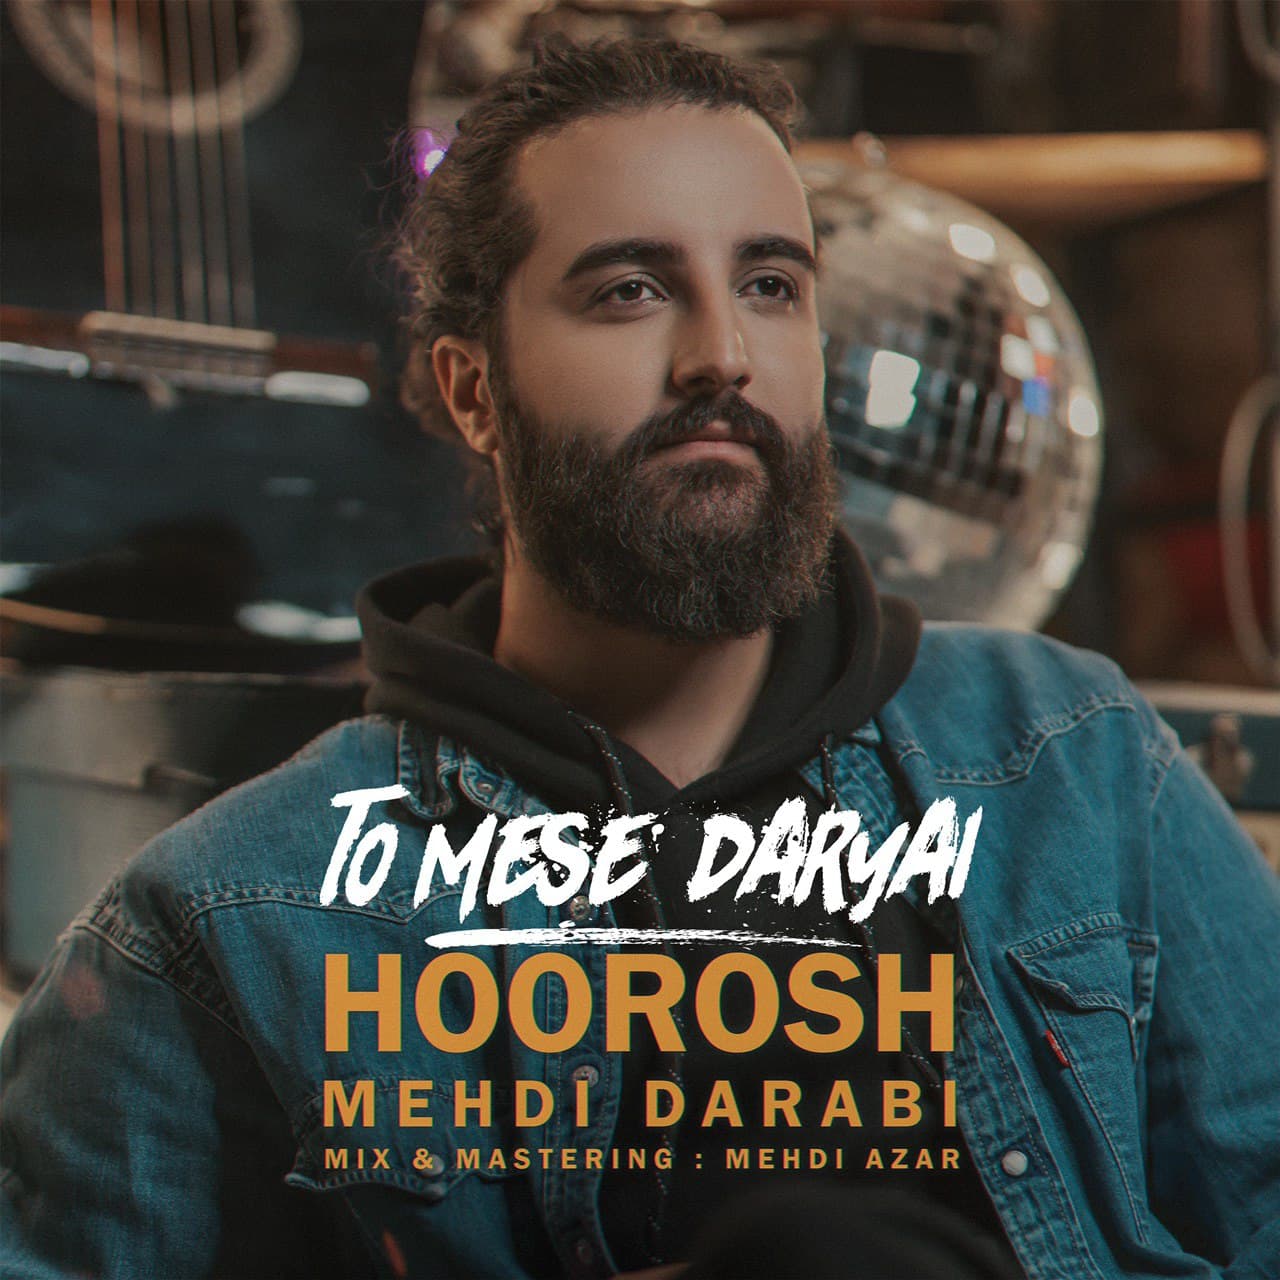 Hoorosh Band To Mese Daryai 